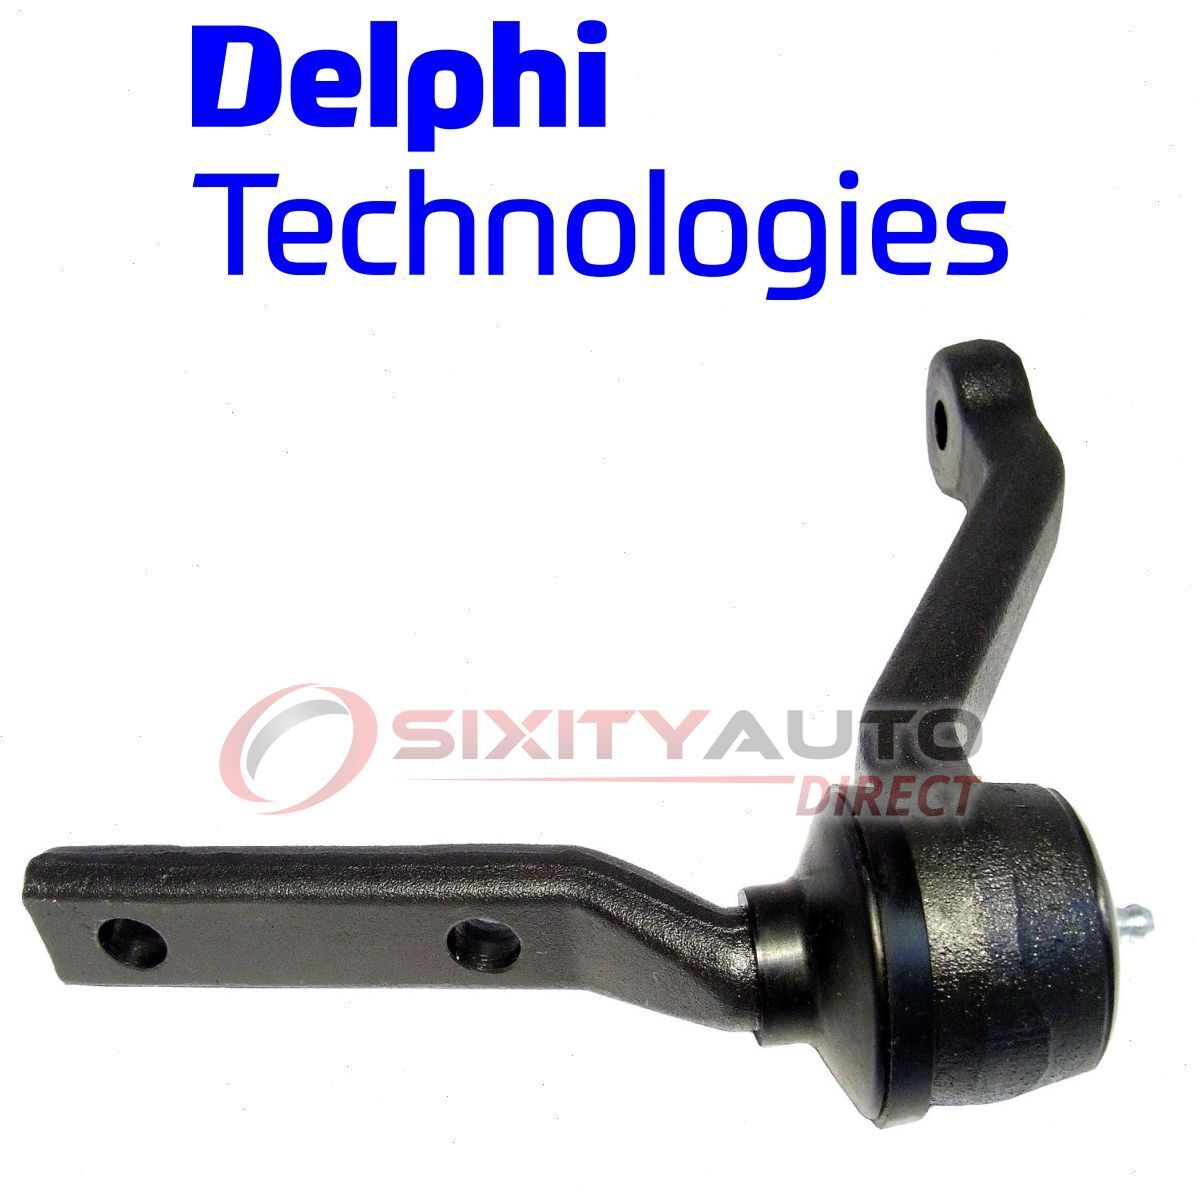 Delphi Steering Idler Arm for 1978-1981 Oldsmobile Cutlass Gear  ro